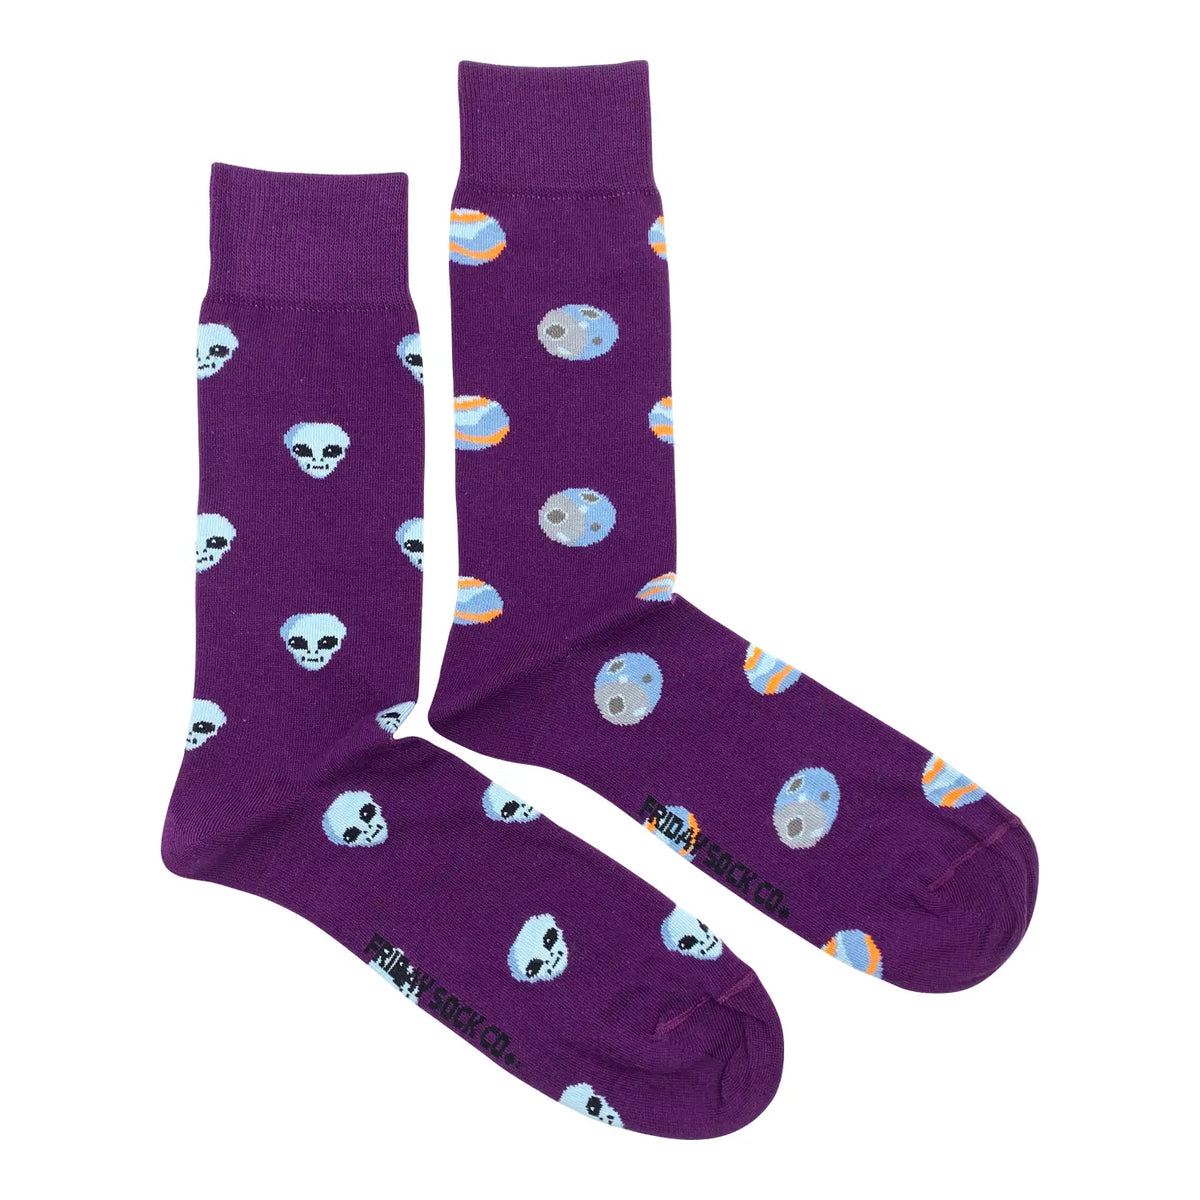 Friday Sock Co. - Men's Socks Alien & Planets Space